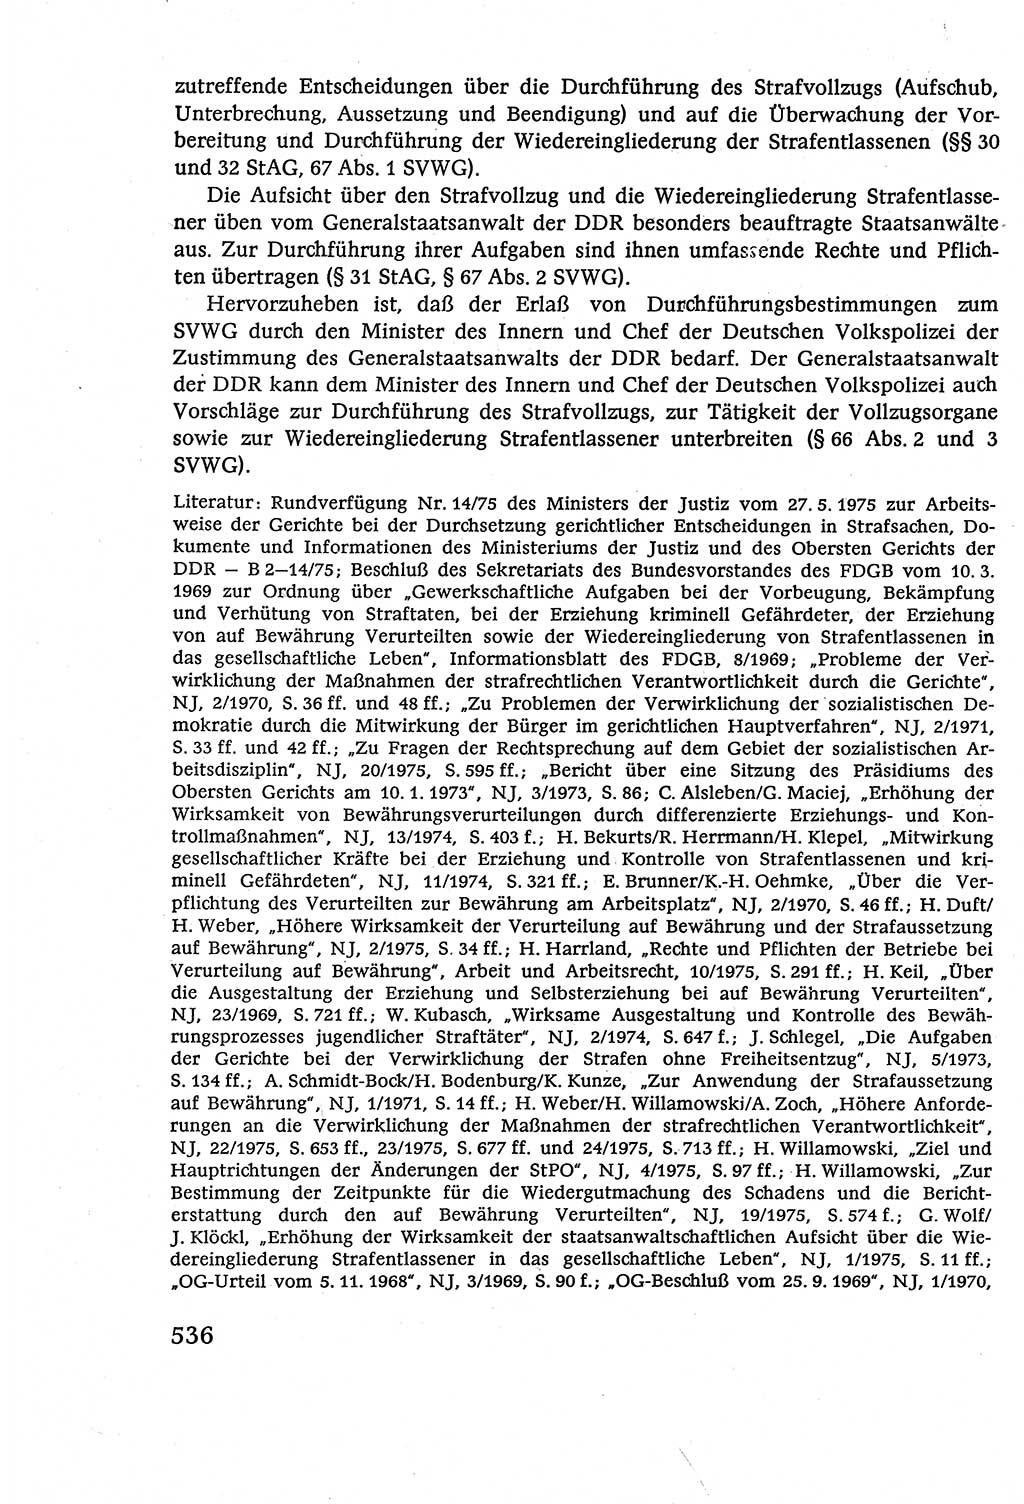 Strafverfahrensrecht [Deutsche Demokratische Republik (DDR)], Lehrbuch 1977, Seite 536 (Strafverf.-R. DDR Lb. 1977, S. 536)